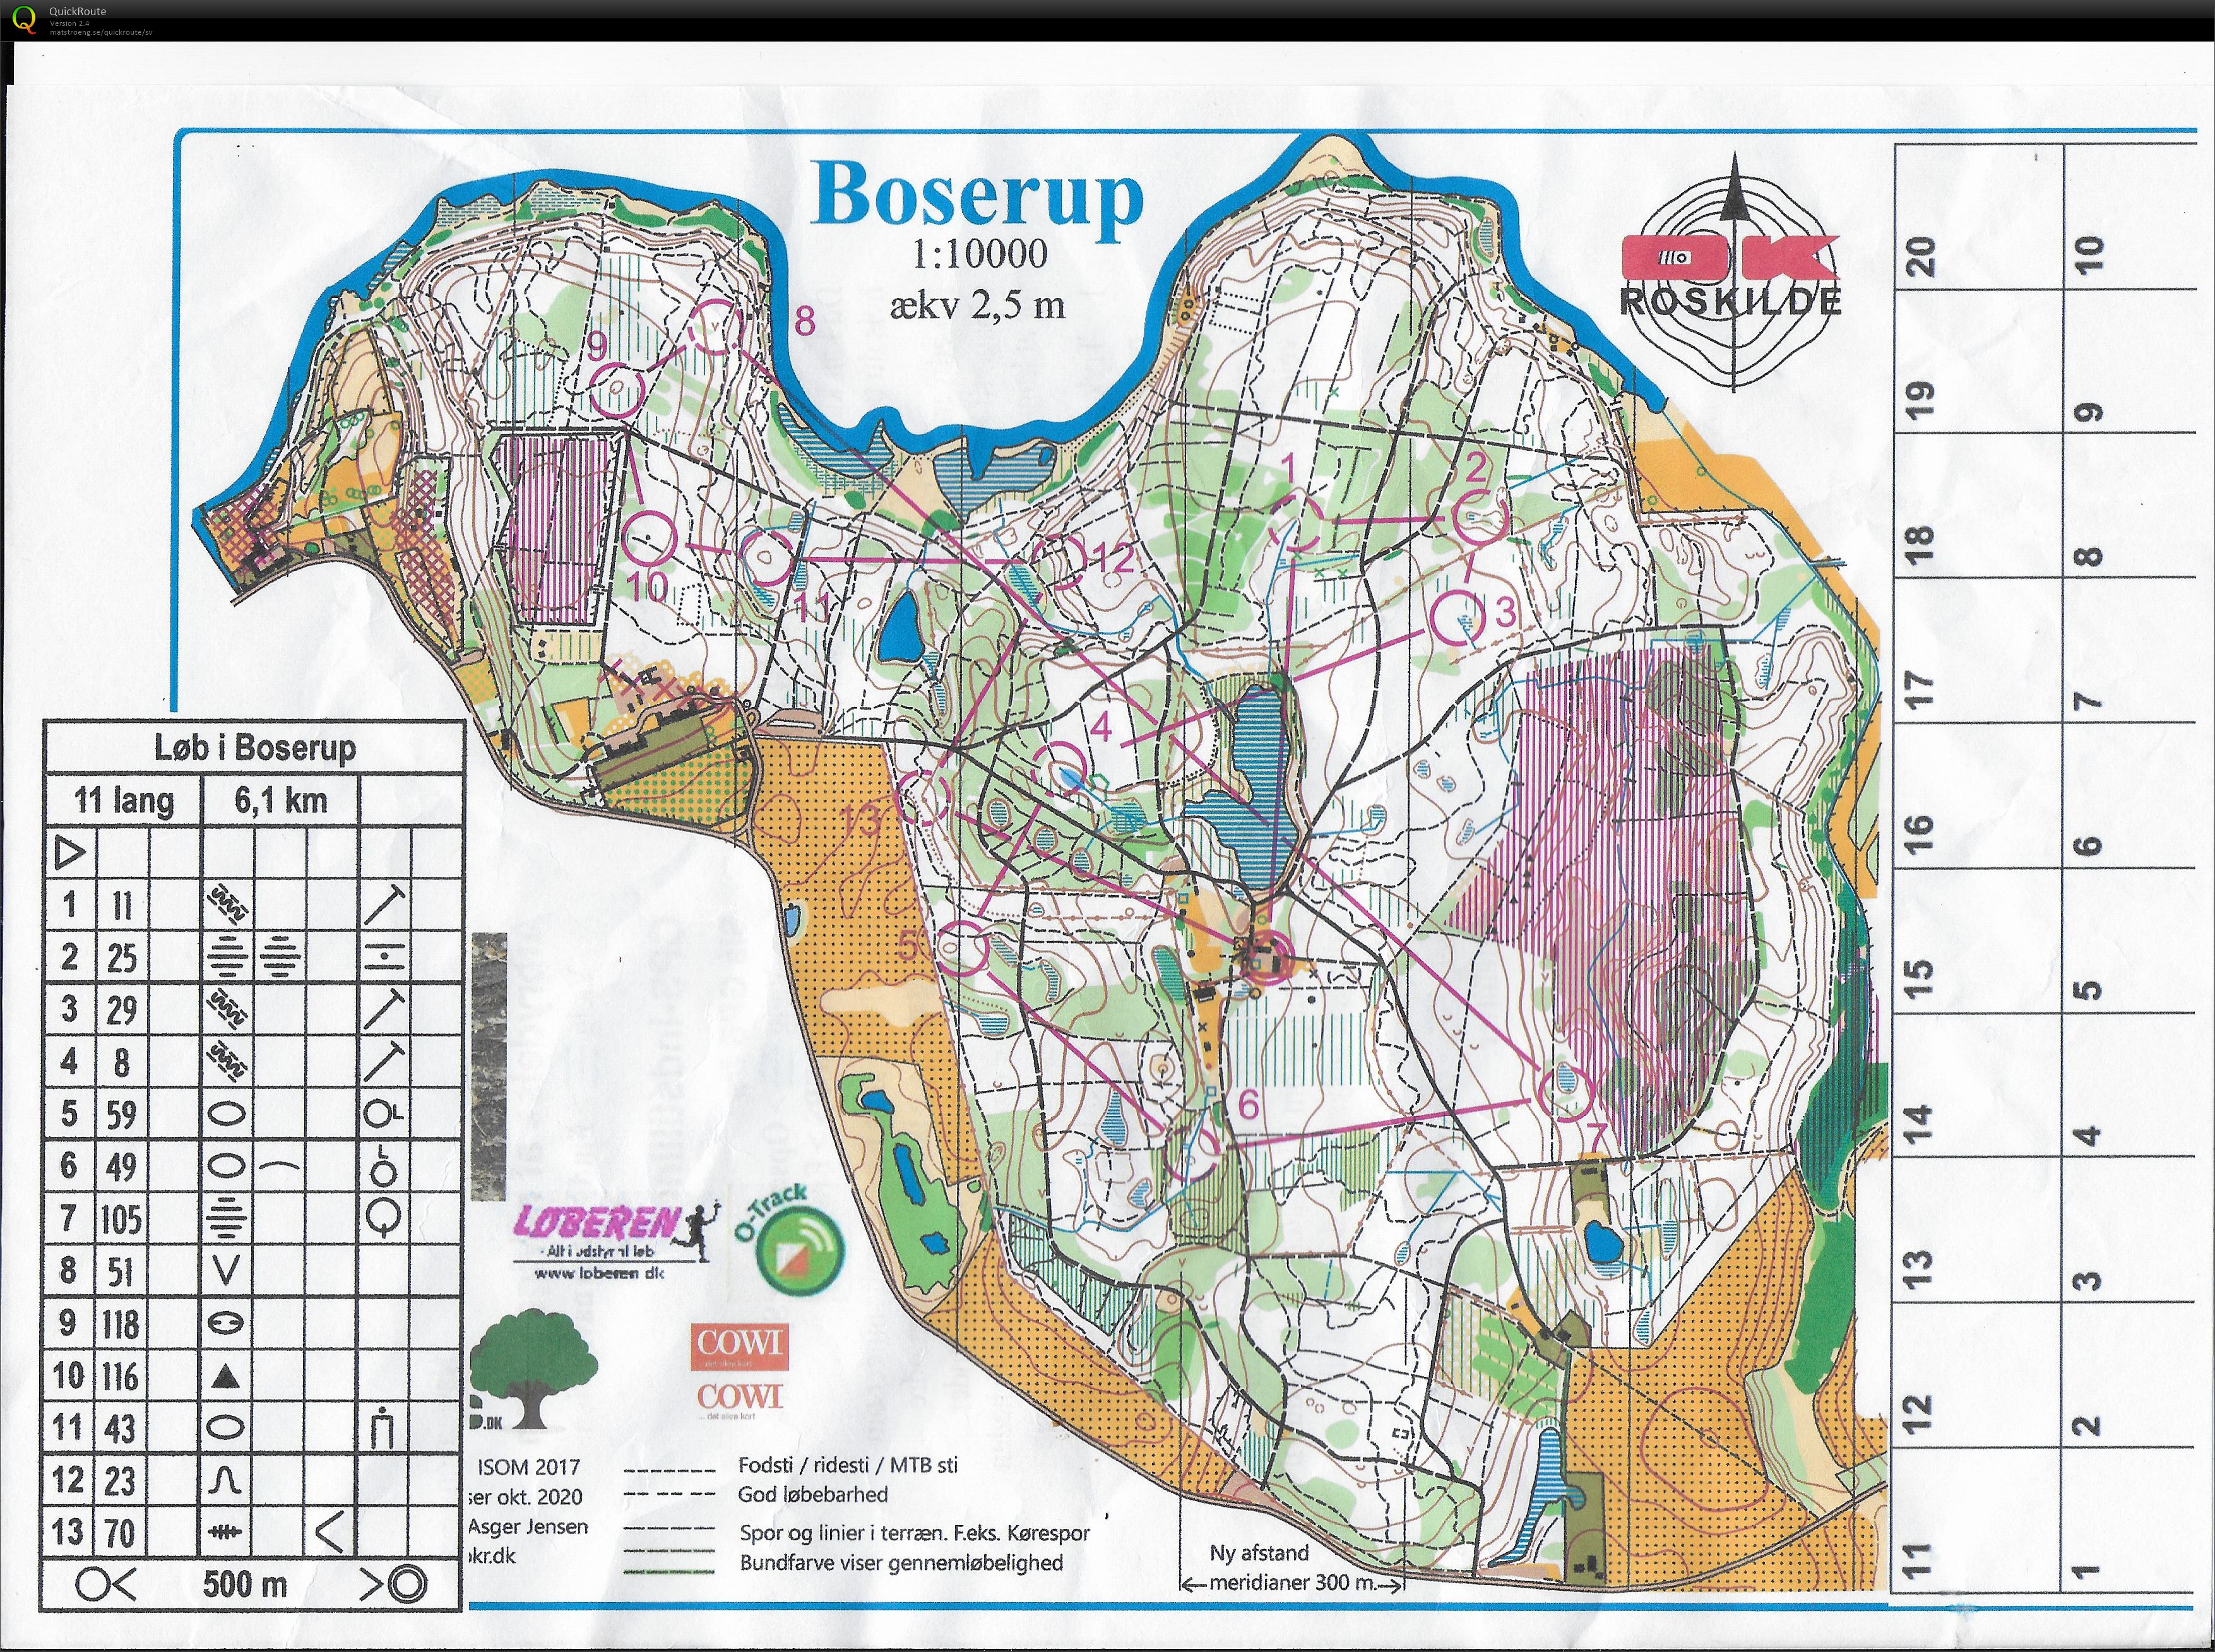 Lørdagsløb i Bosrup - 11 Lang - Coronaløb (10-01-2021)